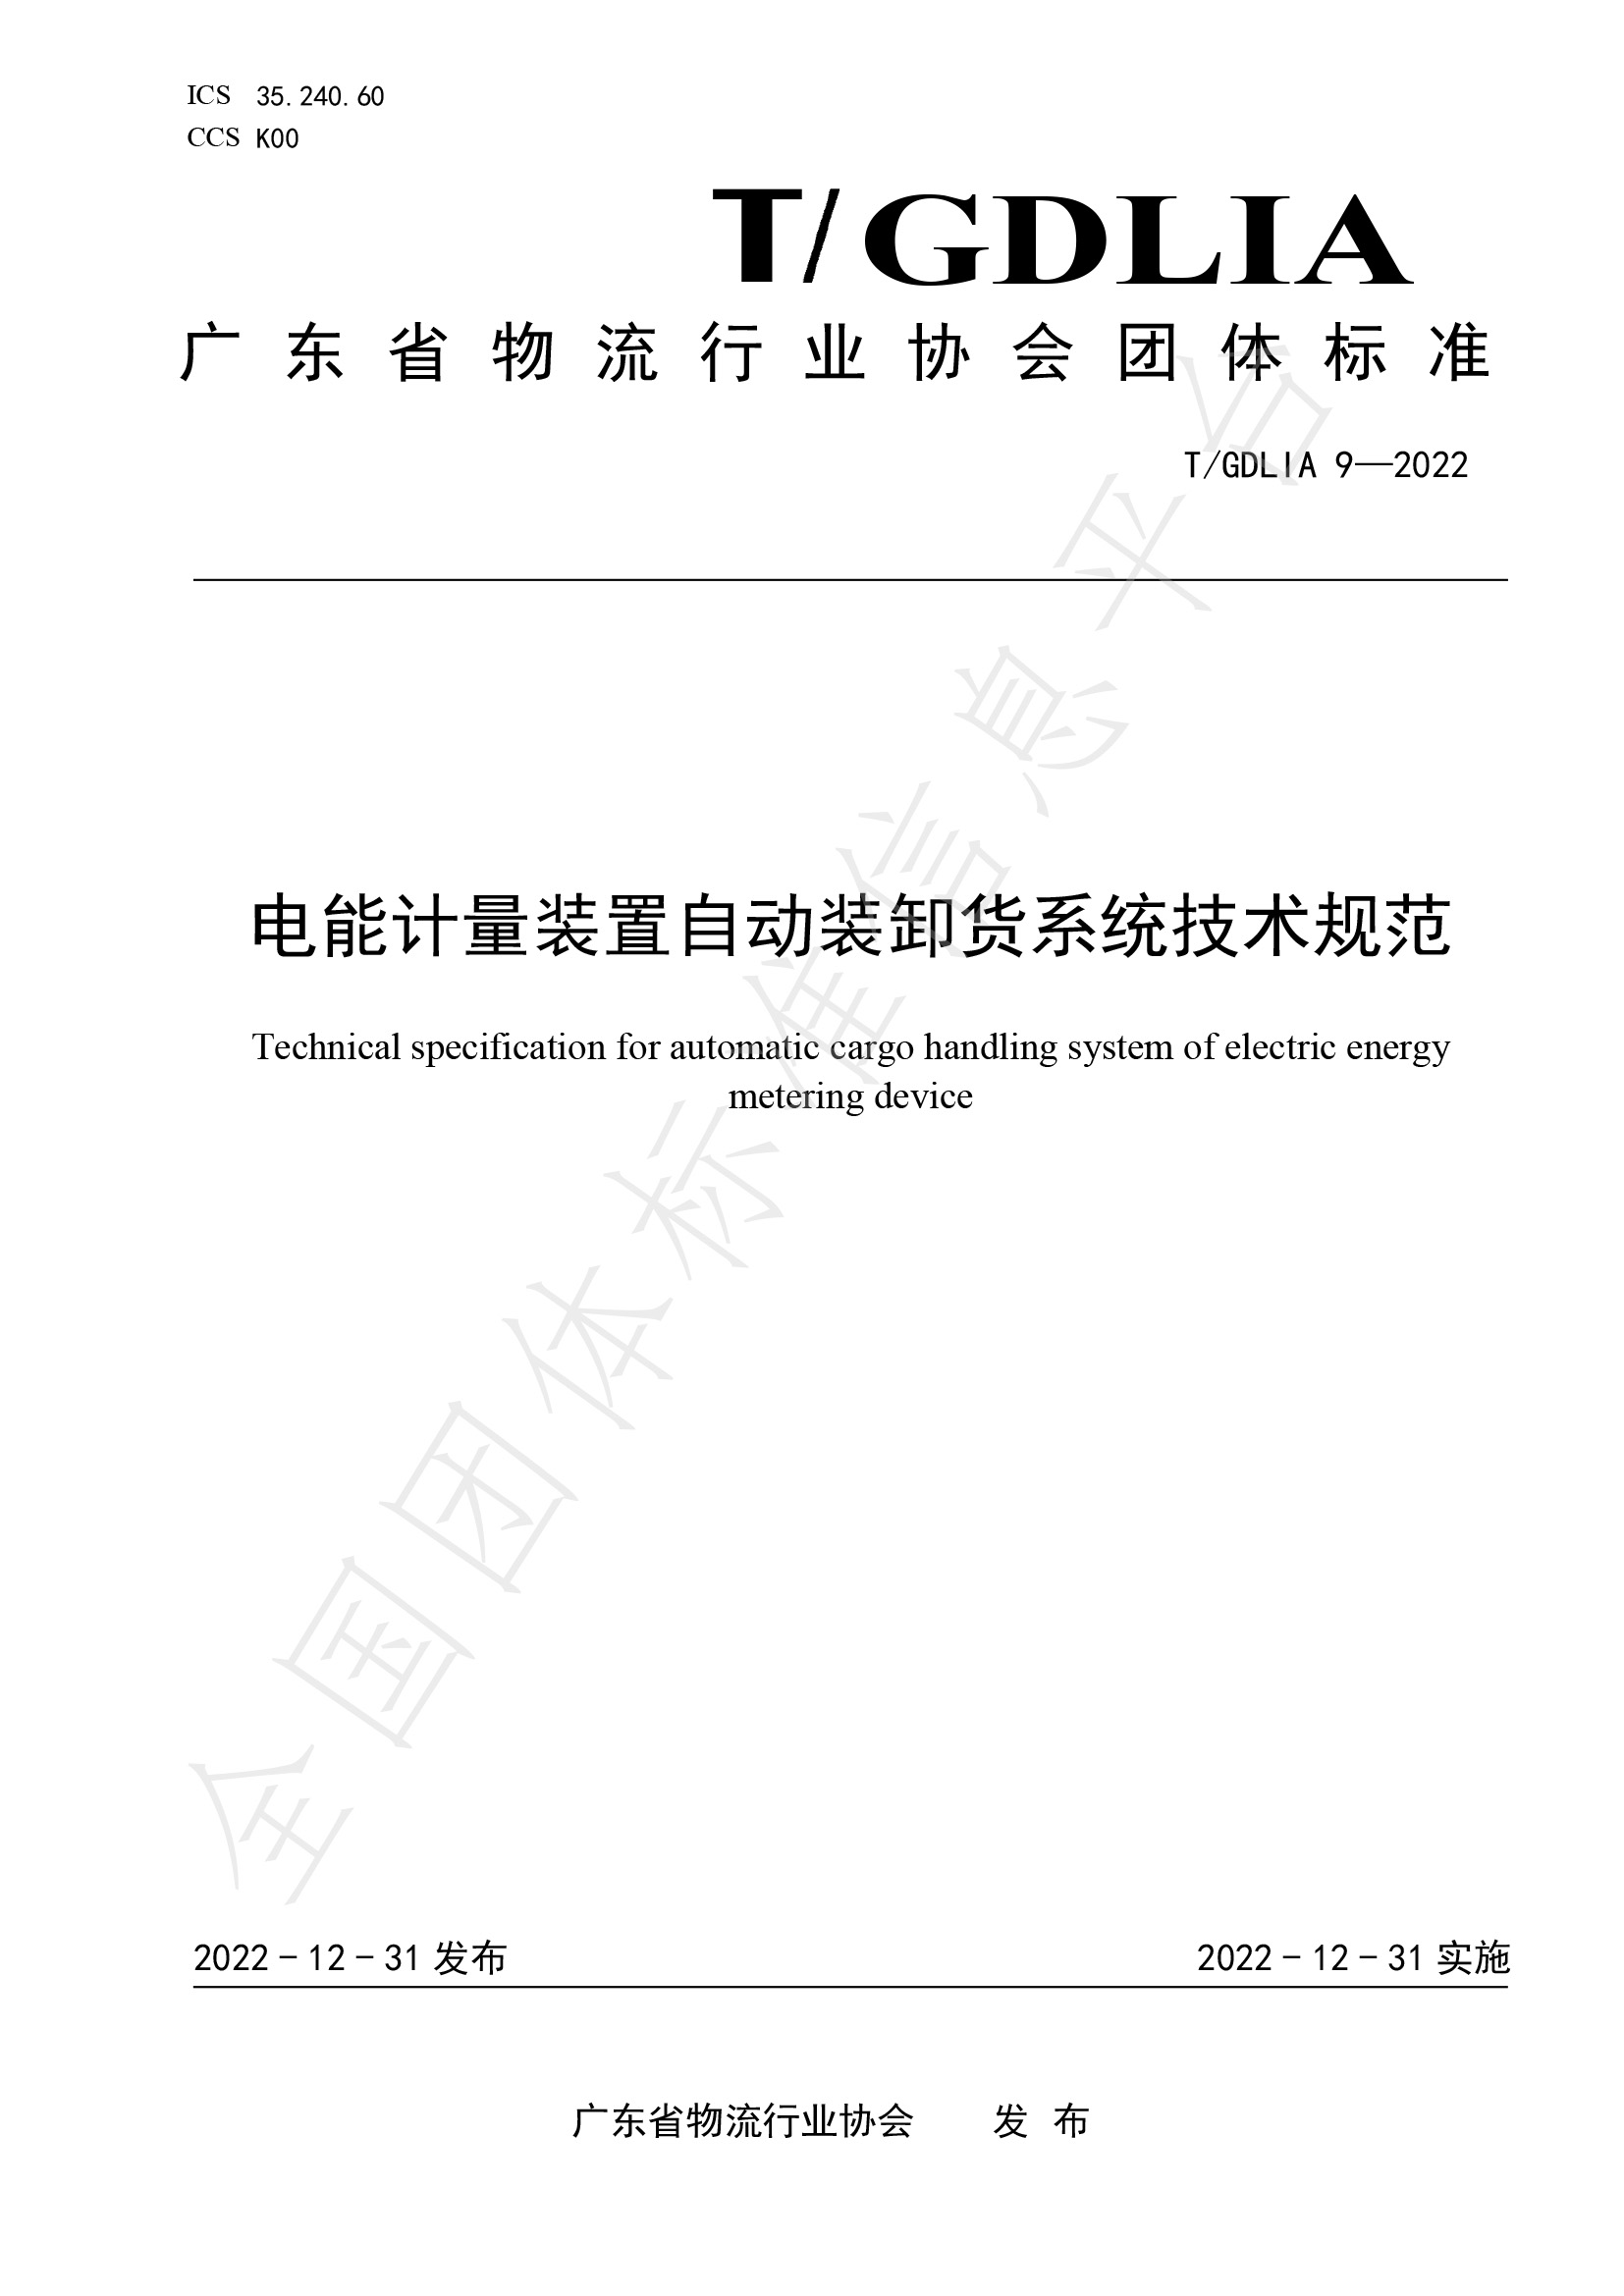 电能计量装置自动装卸货系统技术规范（T-GDLIA 9—2022）-1.jpg